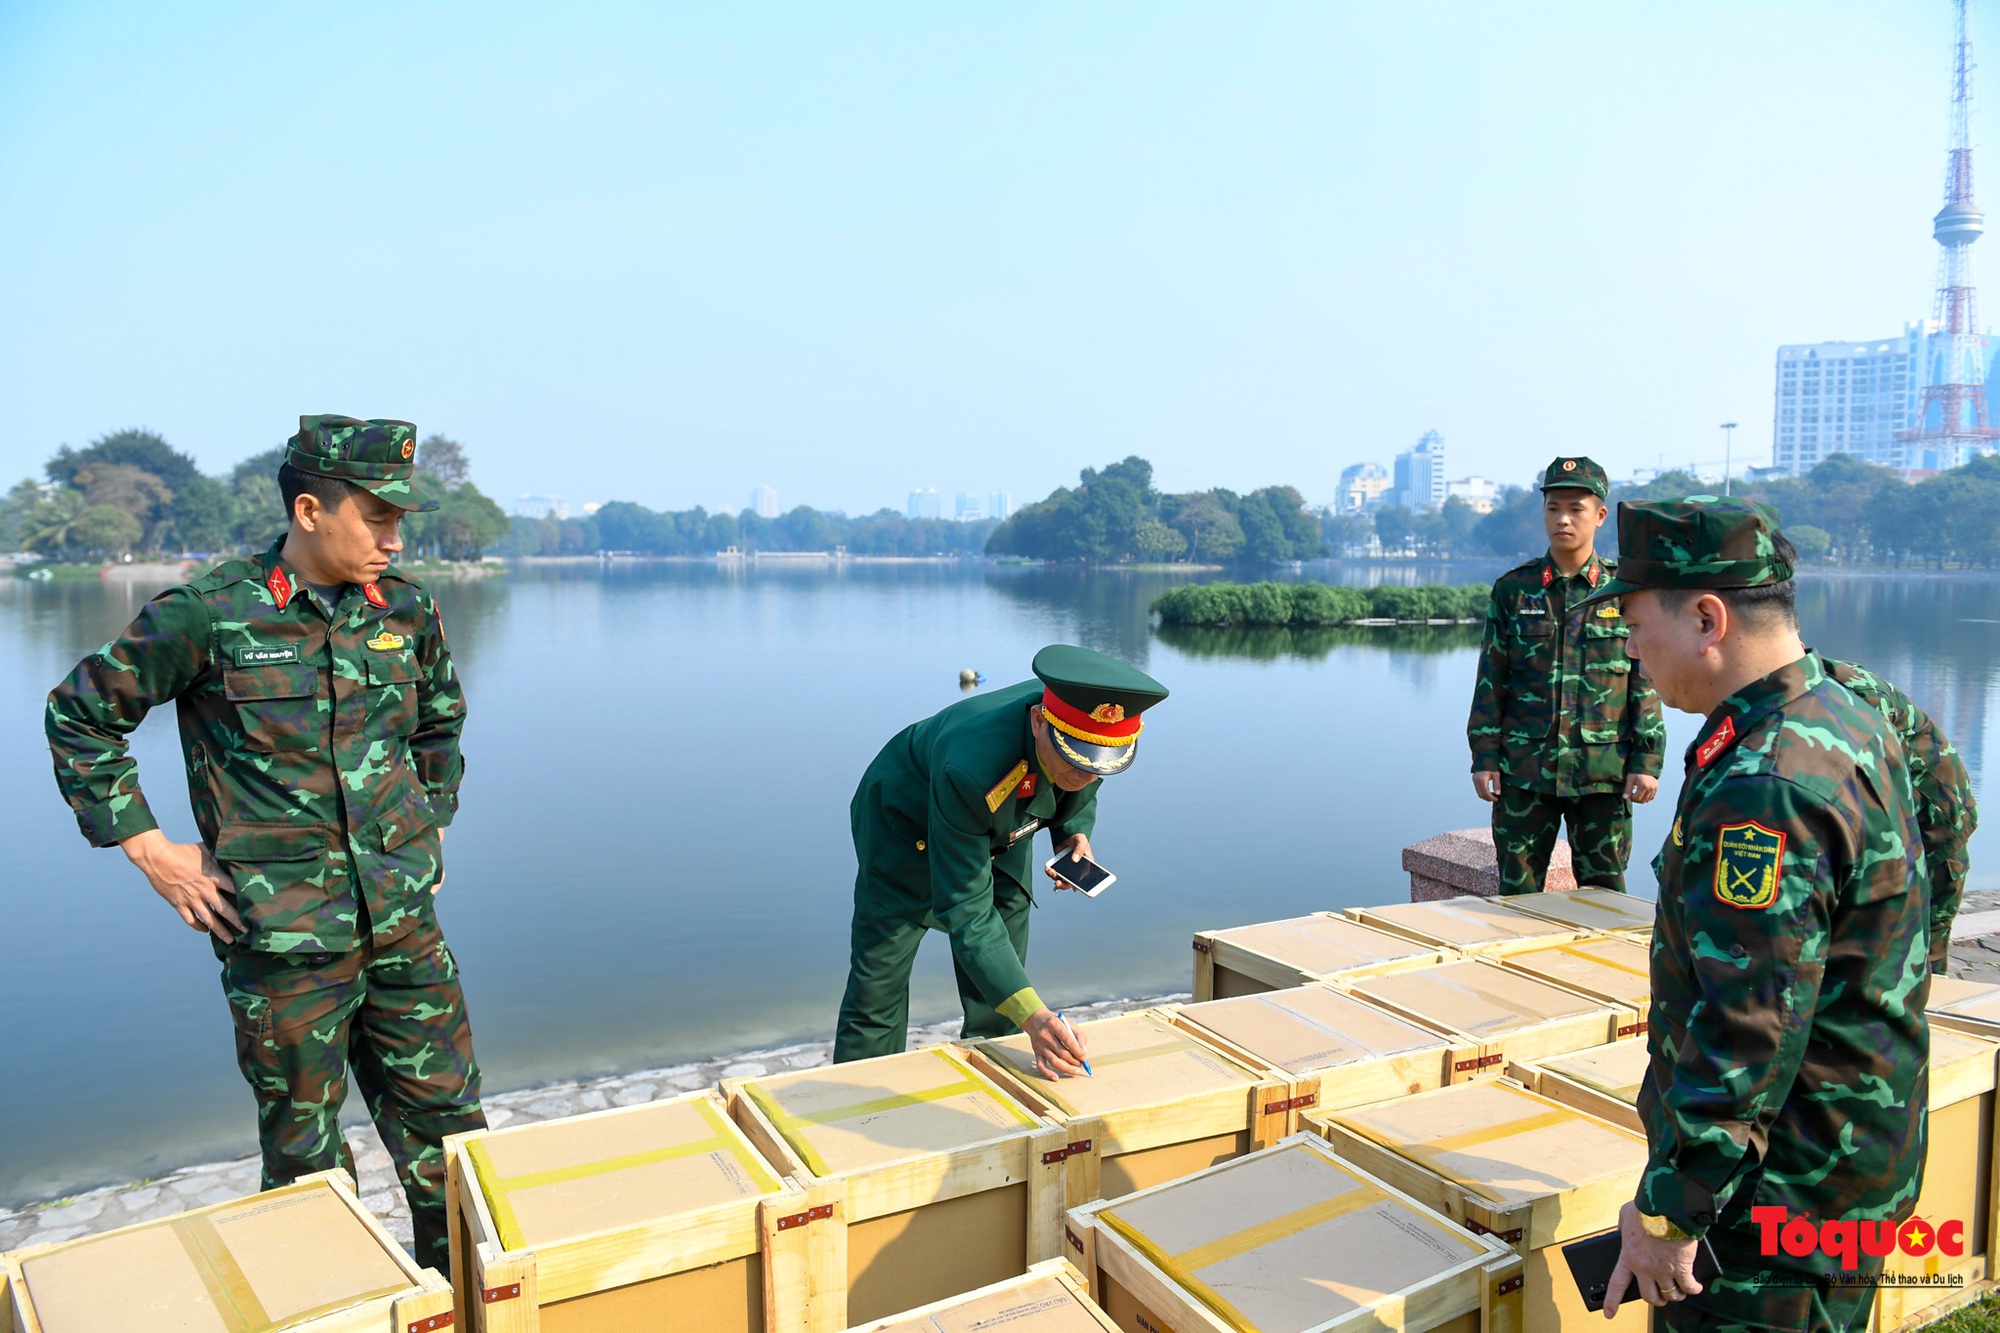 Hà Nội: Cận cảnh lắp đặt trận địa pháo hoa phục vụ đêm Giao thừa - Ảnh 2.